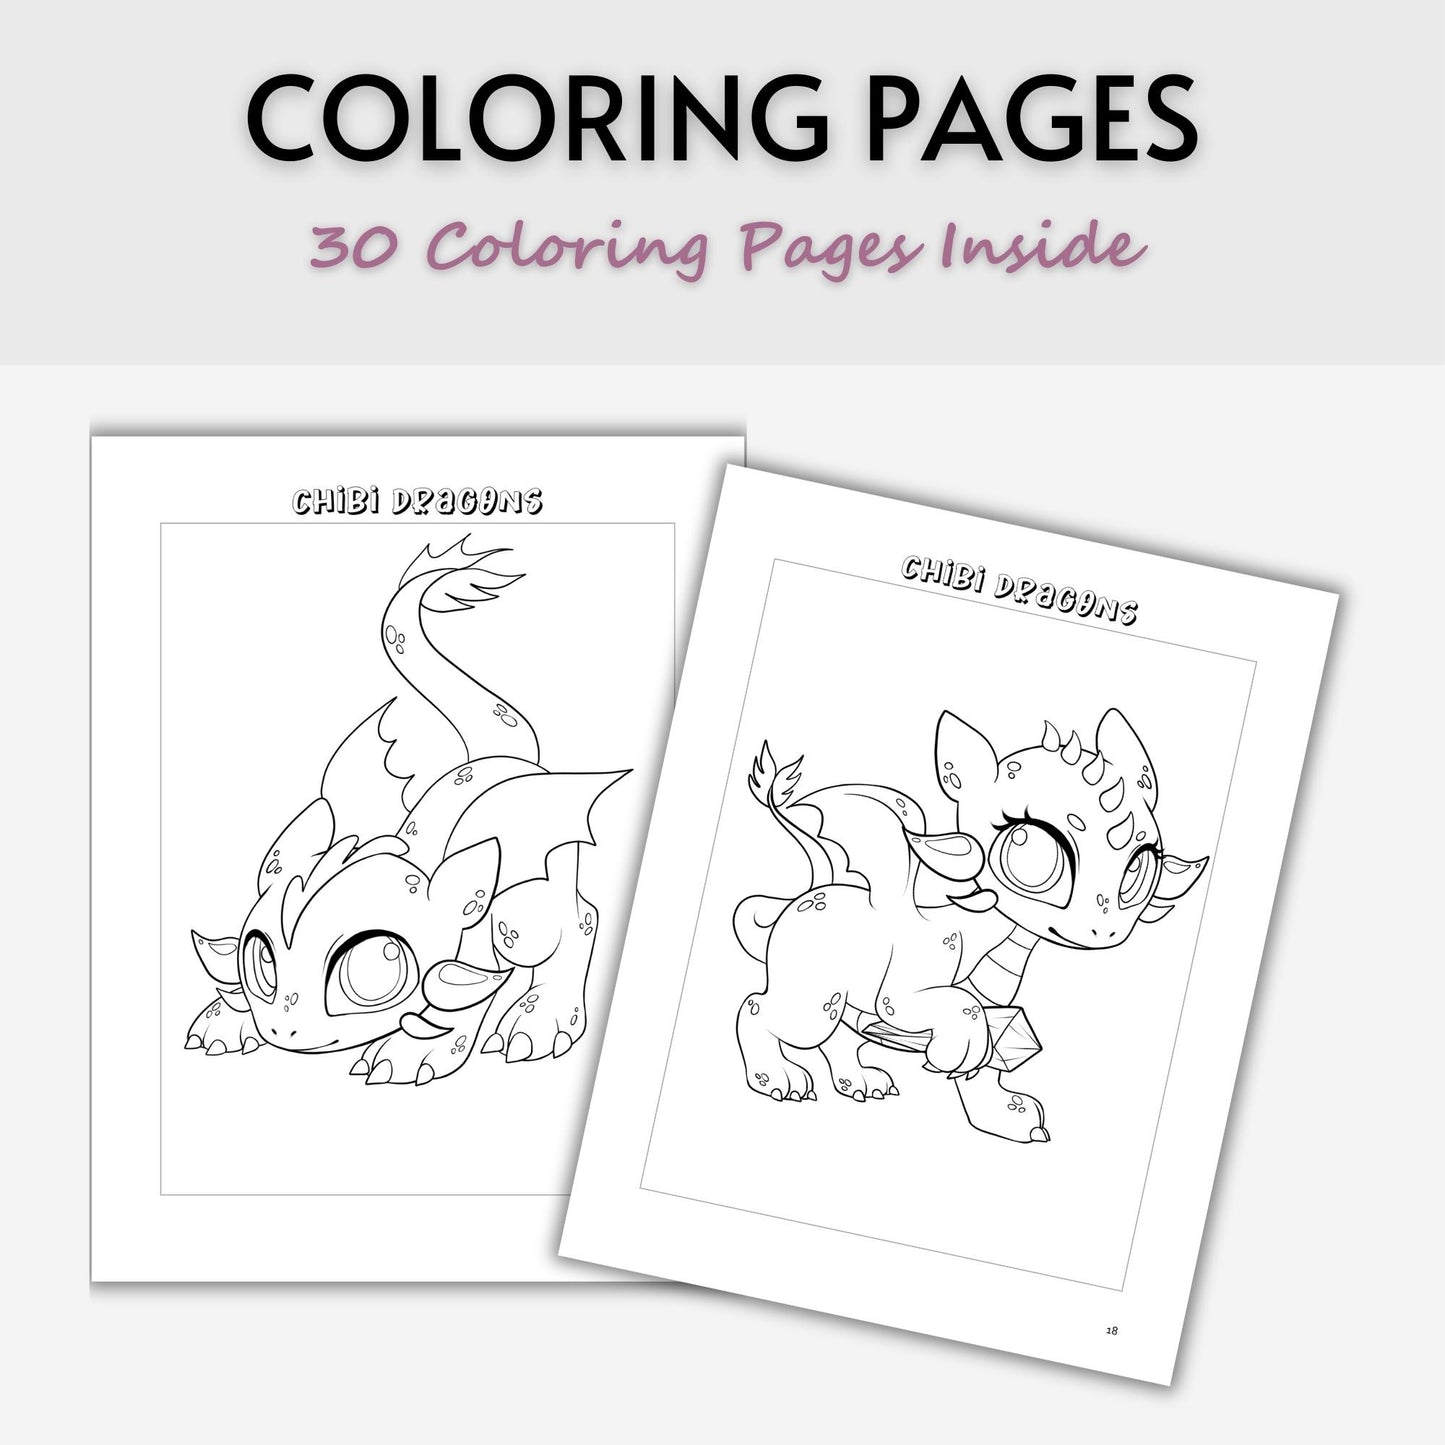 Chibi Dragons Coloring Book